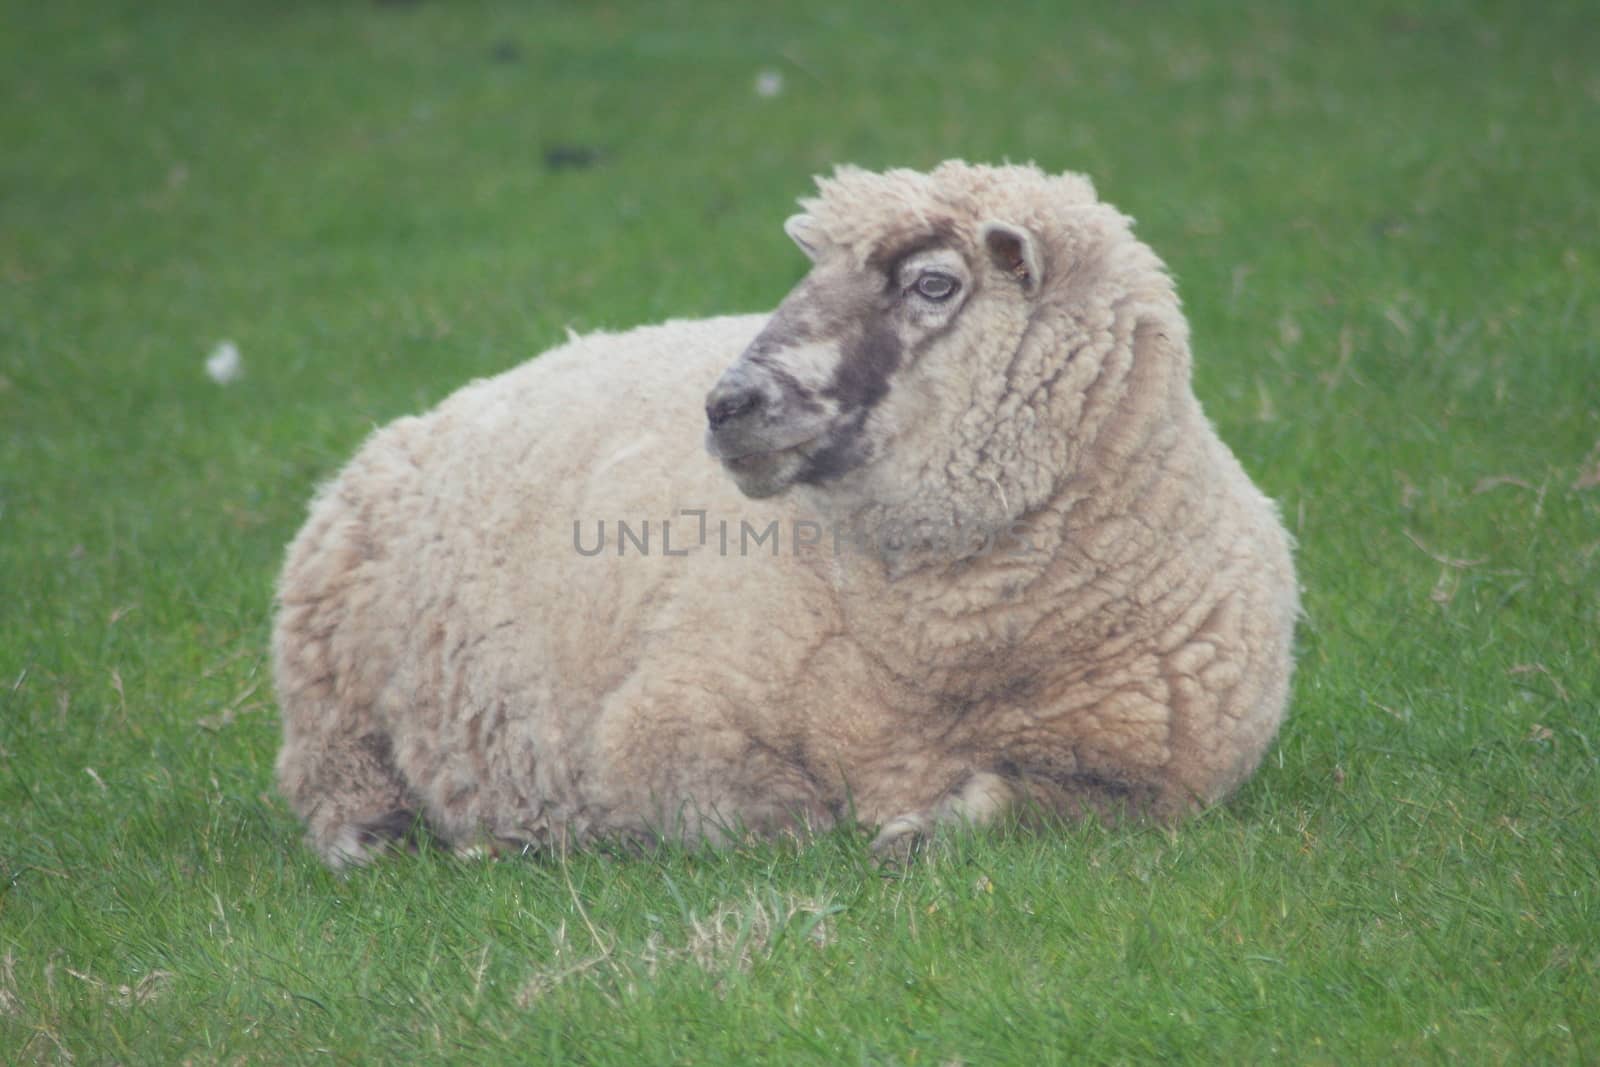 A sheep lying on a lush green lawn